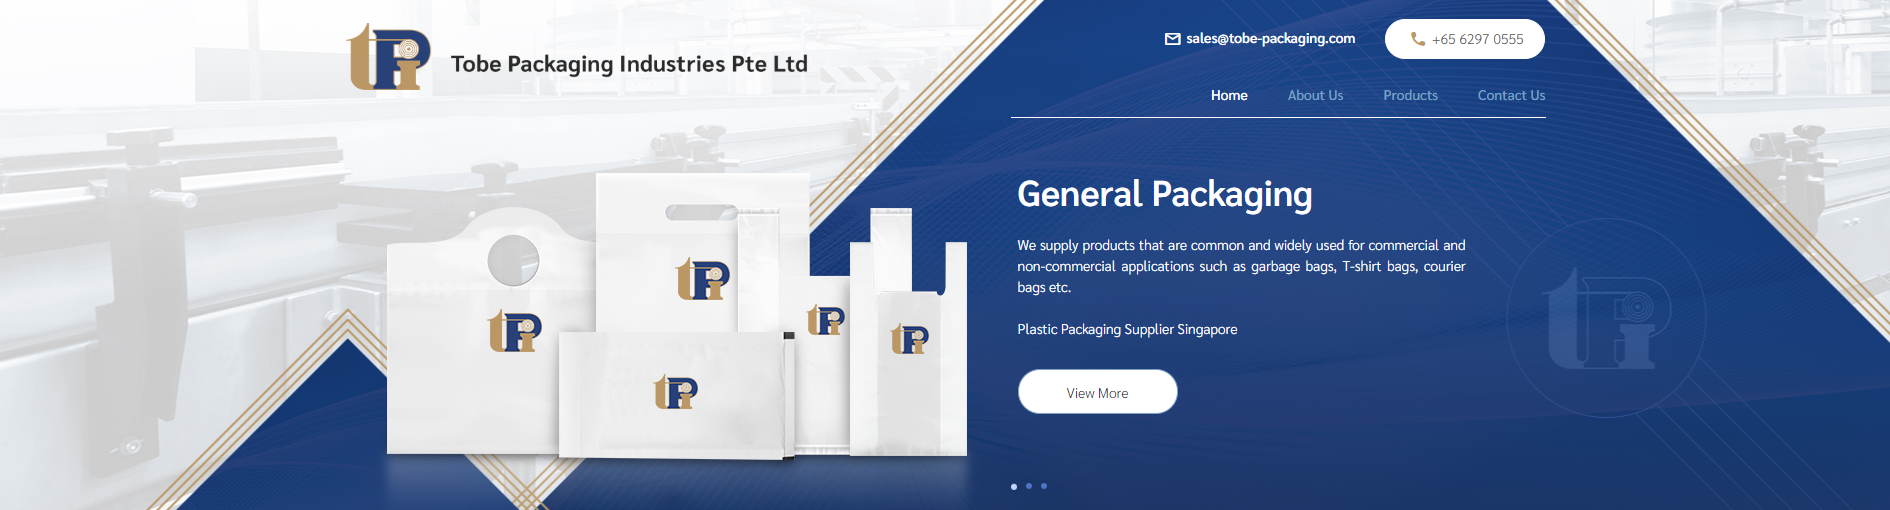 Tobe Packaging Industries Pte Ltd